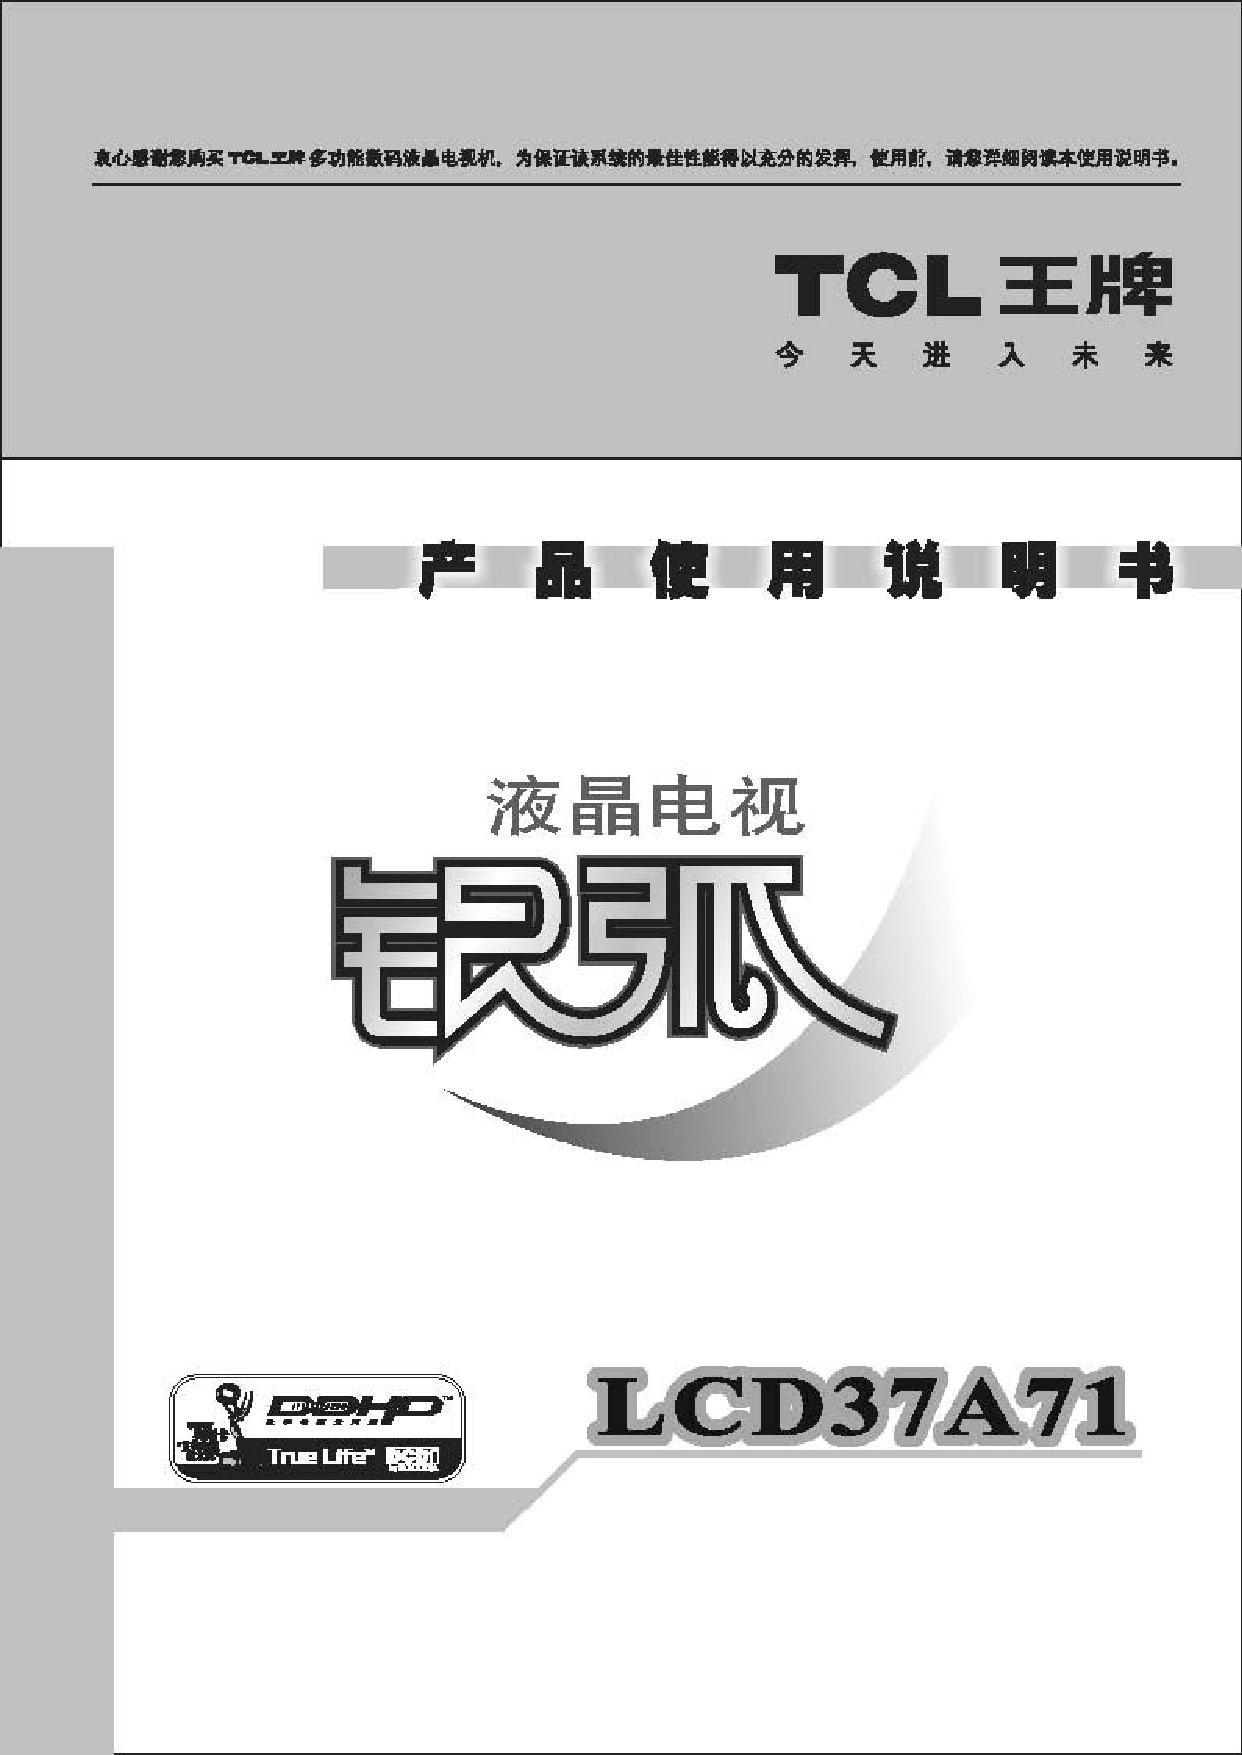 TCL LCD37A71 使用说明书 封面